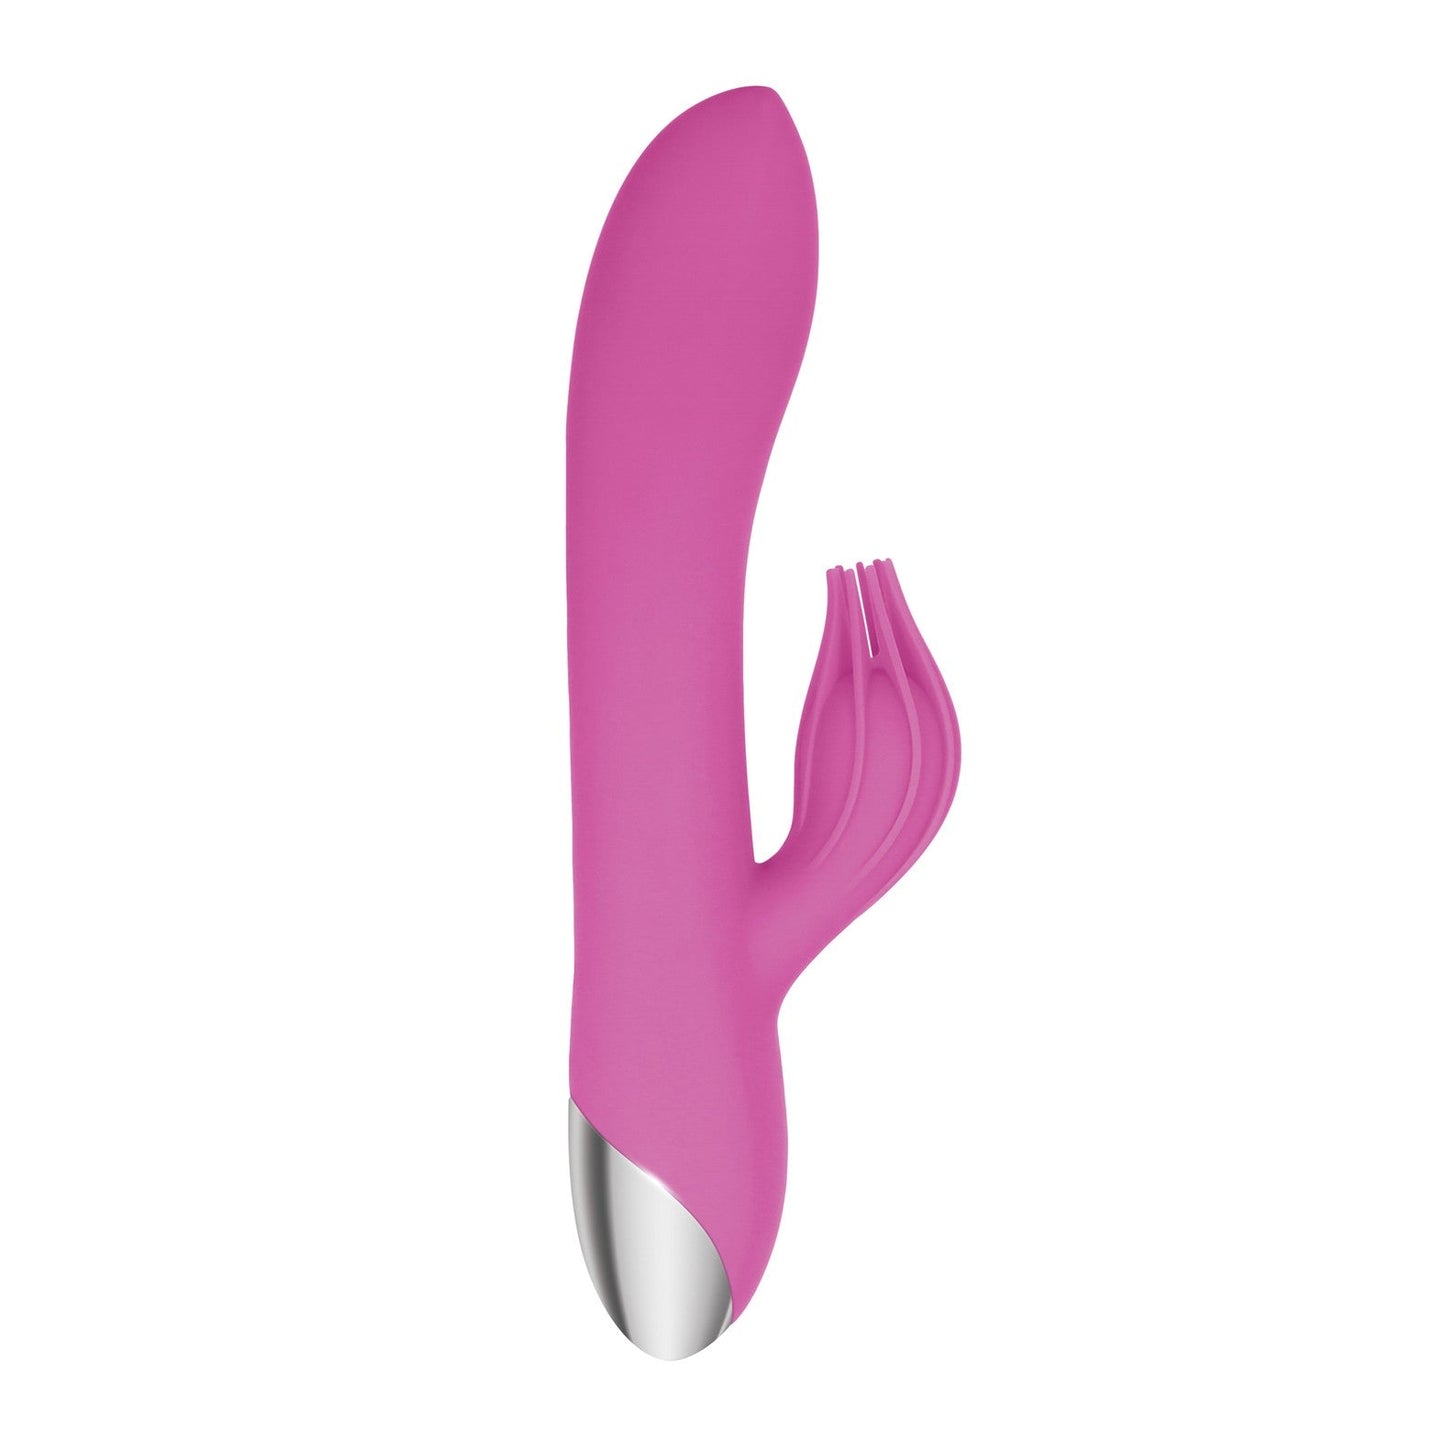 Adam & Eve Eve's Clit Tickling Rabbit G-bliss O-maker - Pink